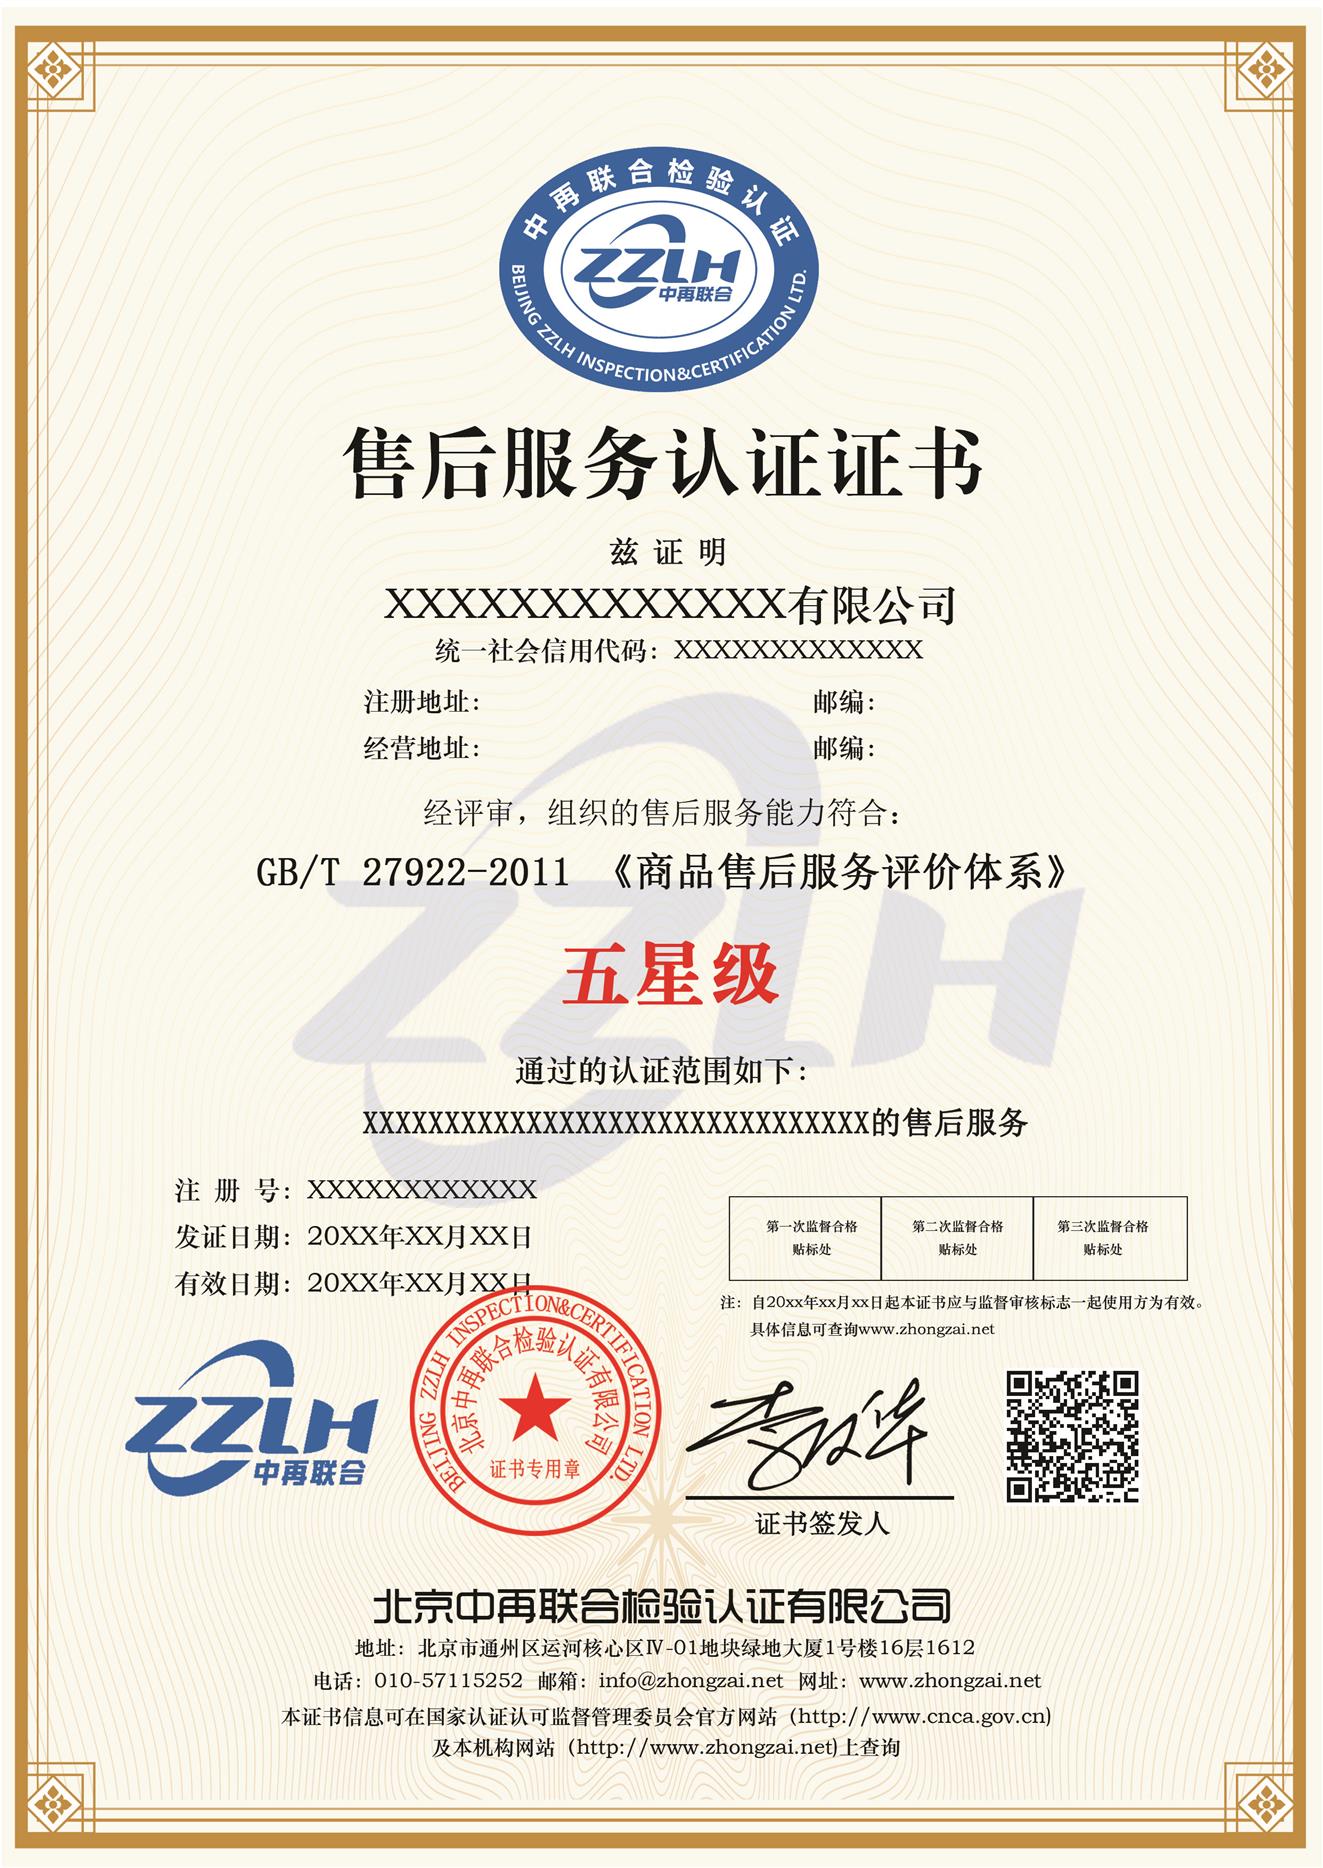 武汉初级生鲜配送服务认证供货商 吸引投资